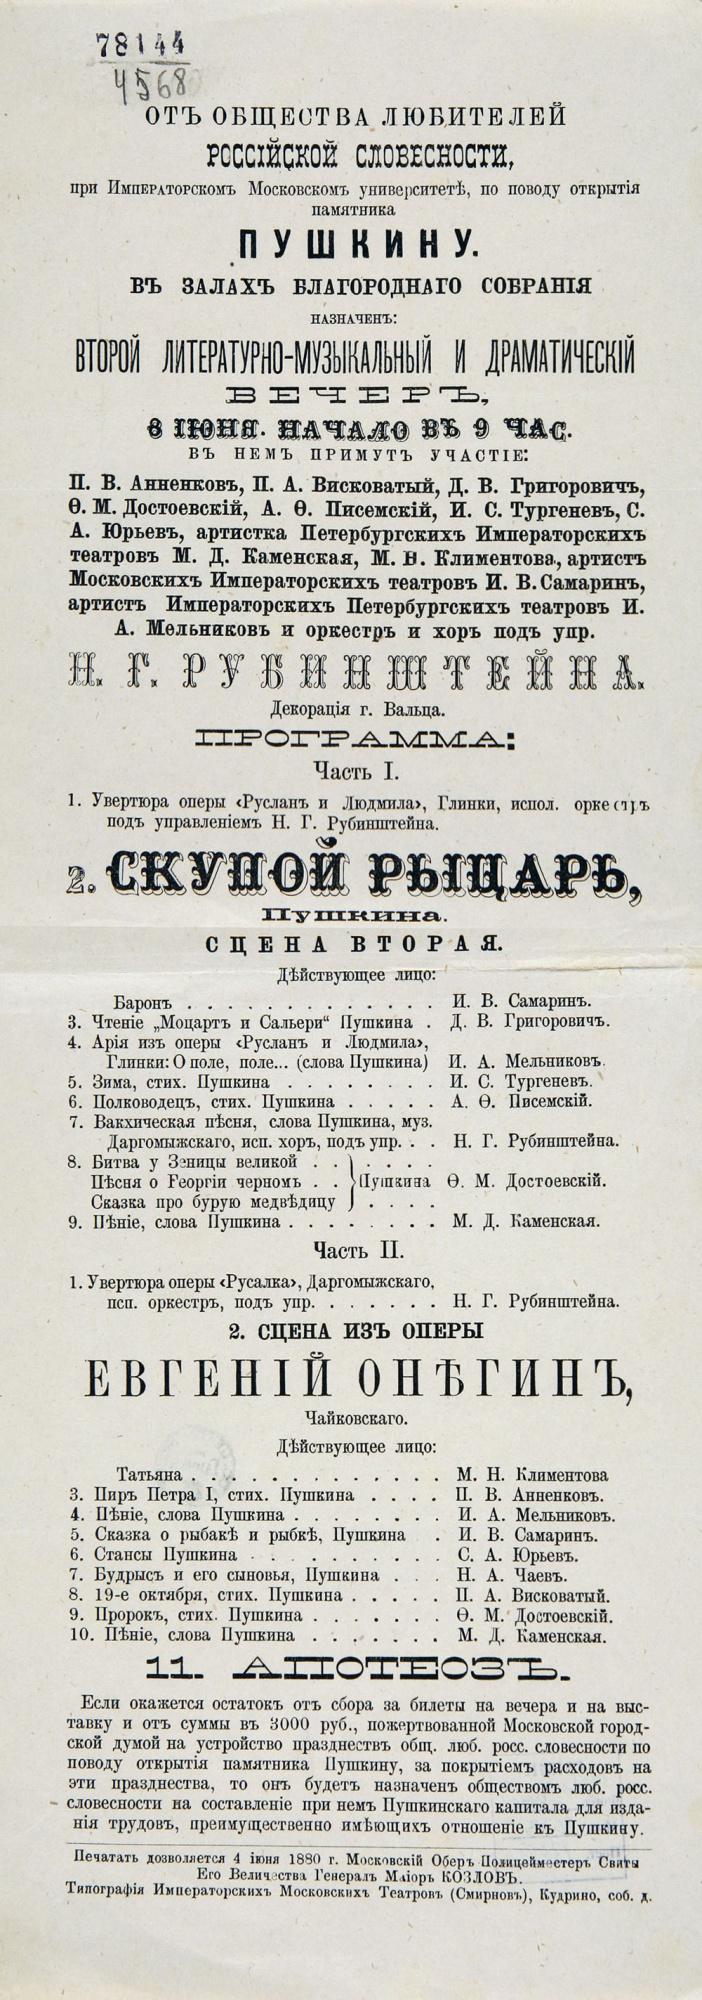 Афиша концерта в честь Пушкина